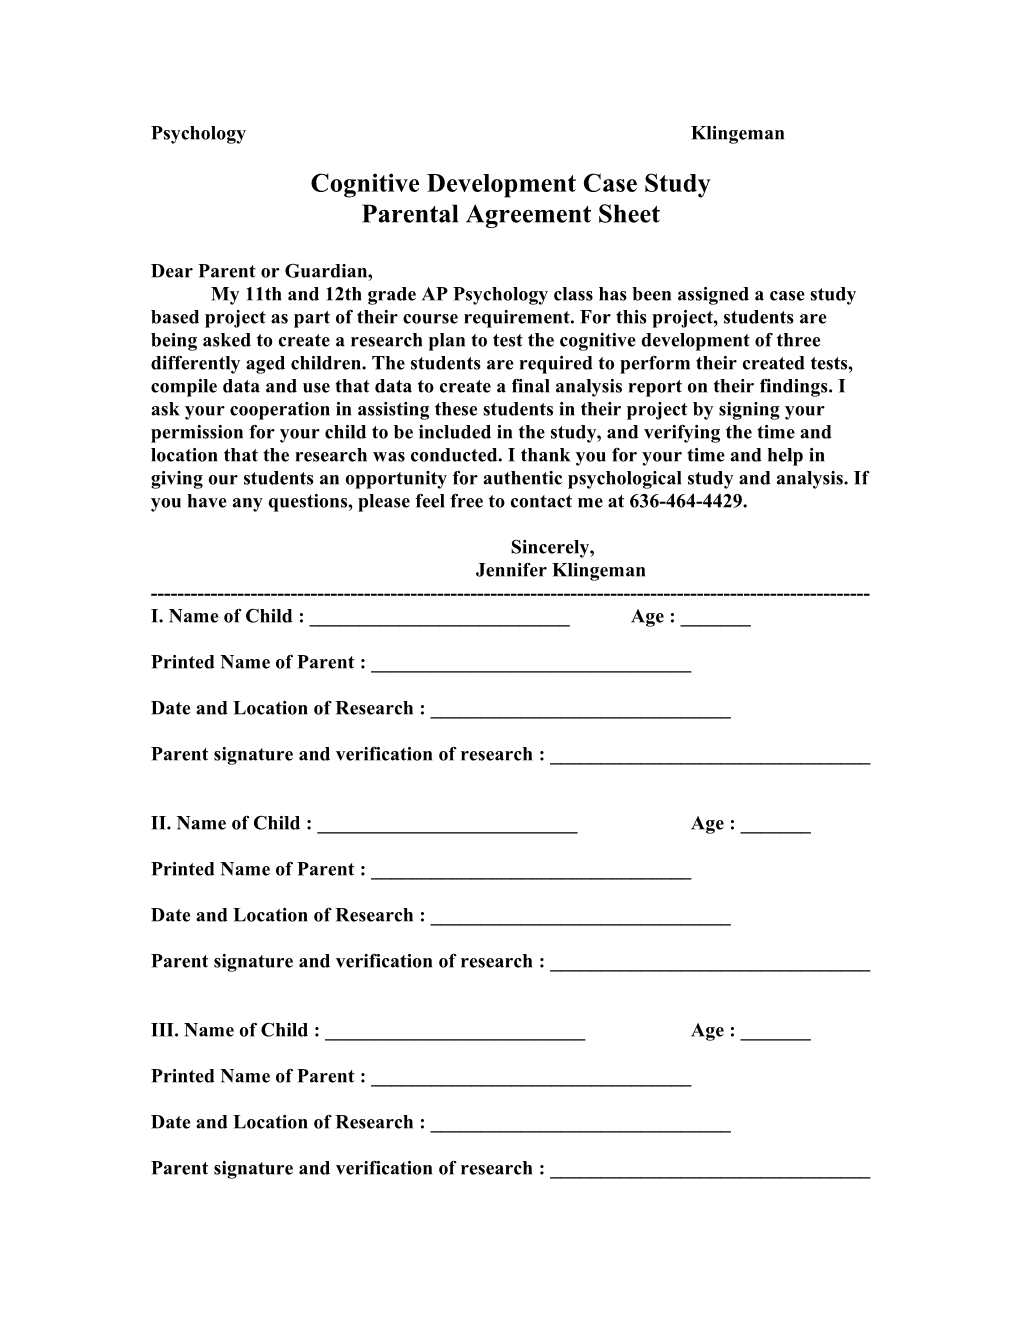 Cognitive Development Case Study s1